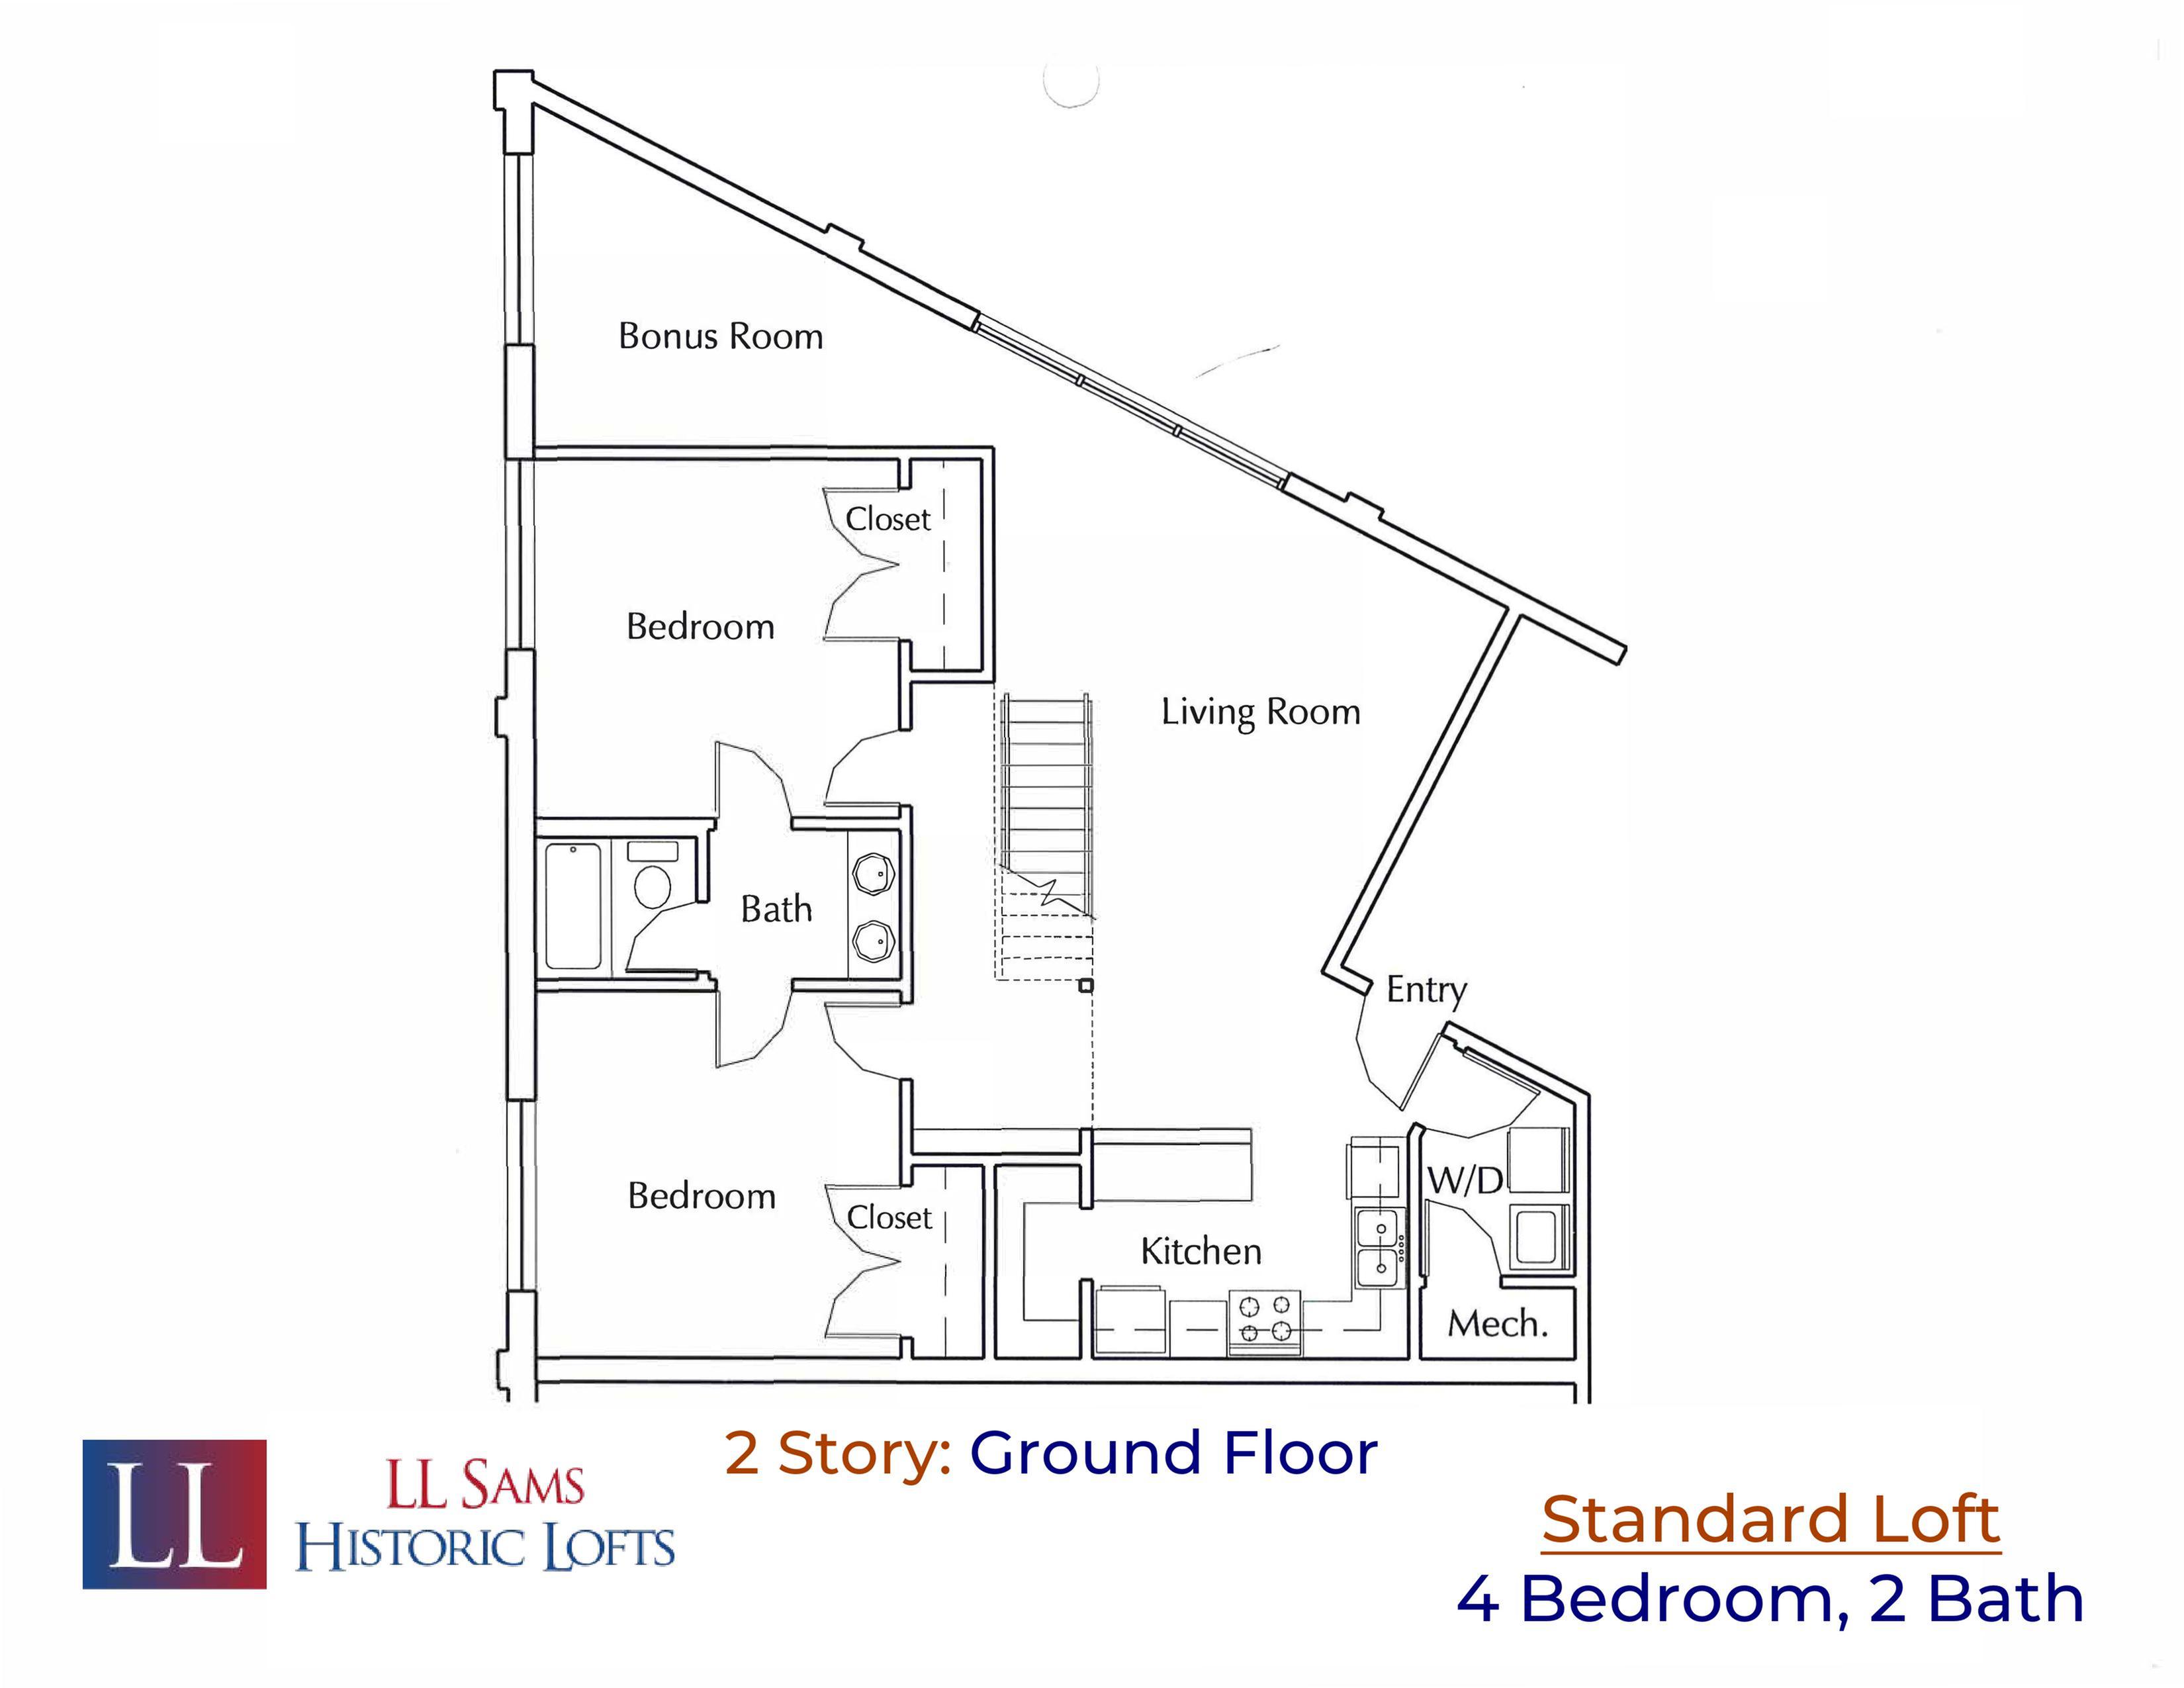 Standard 4-2 Ground Floor Plan